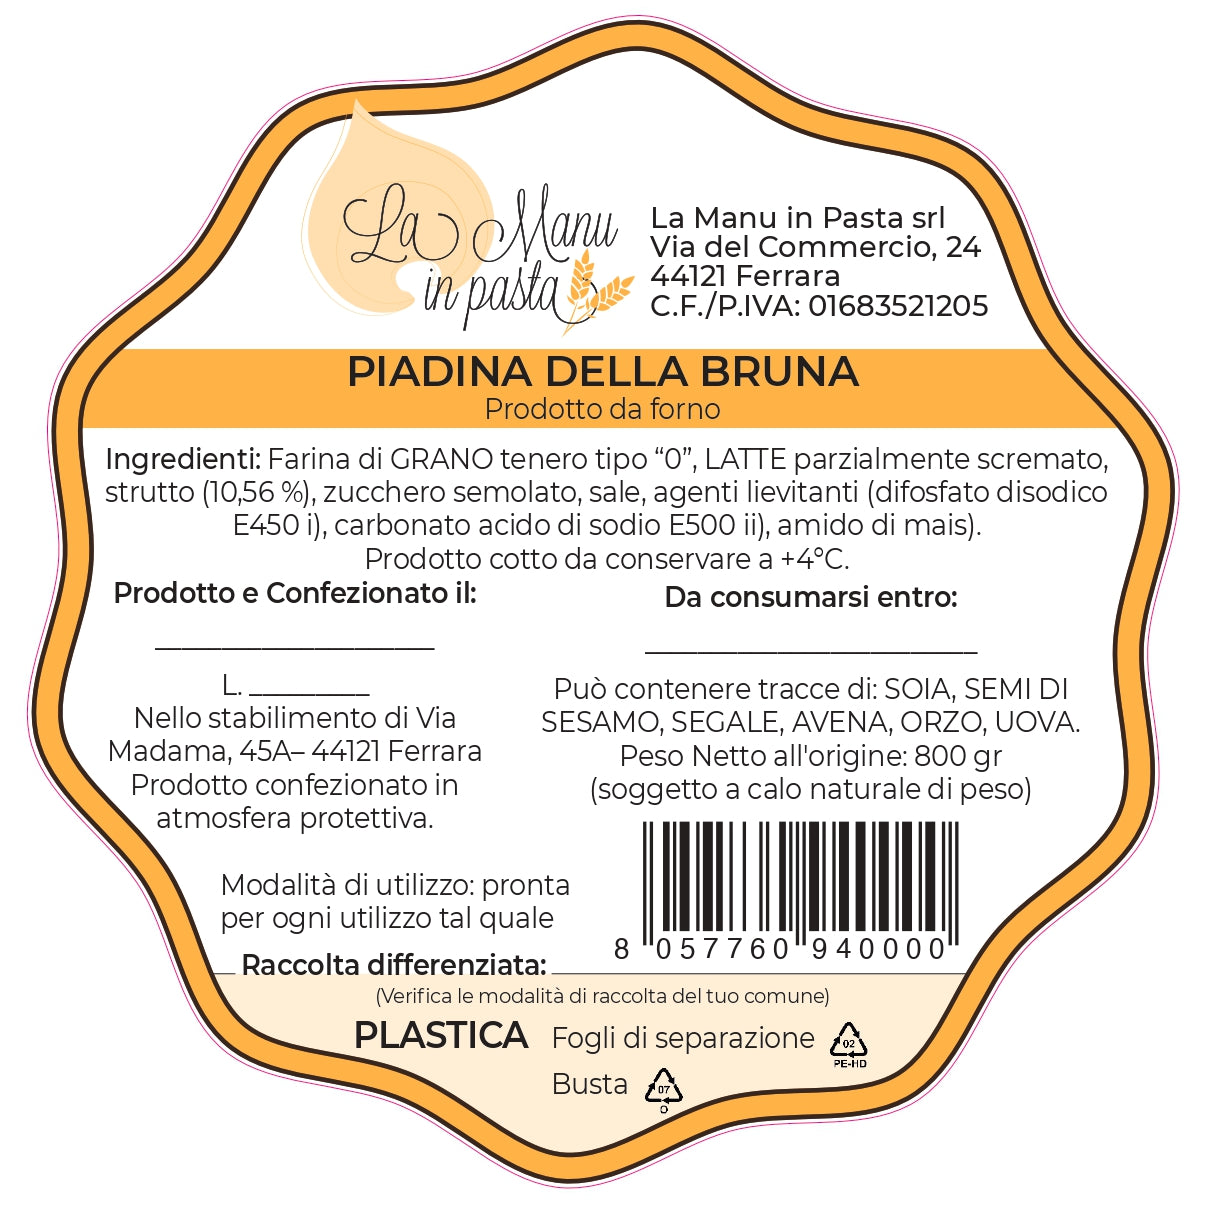 Piadina della Bruna (5 pieces)